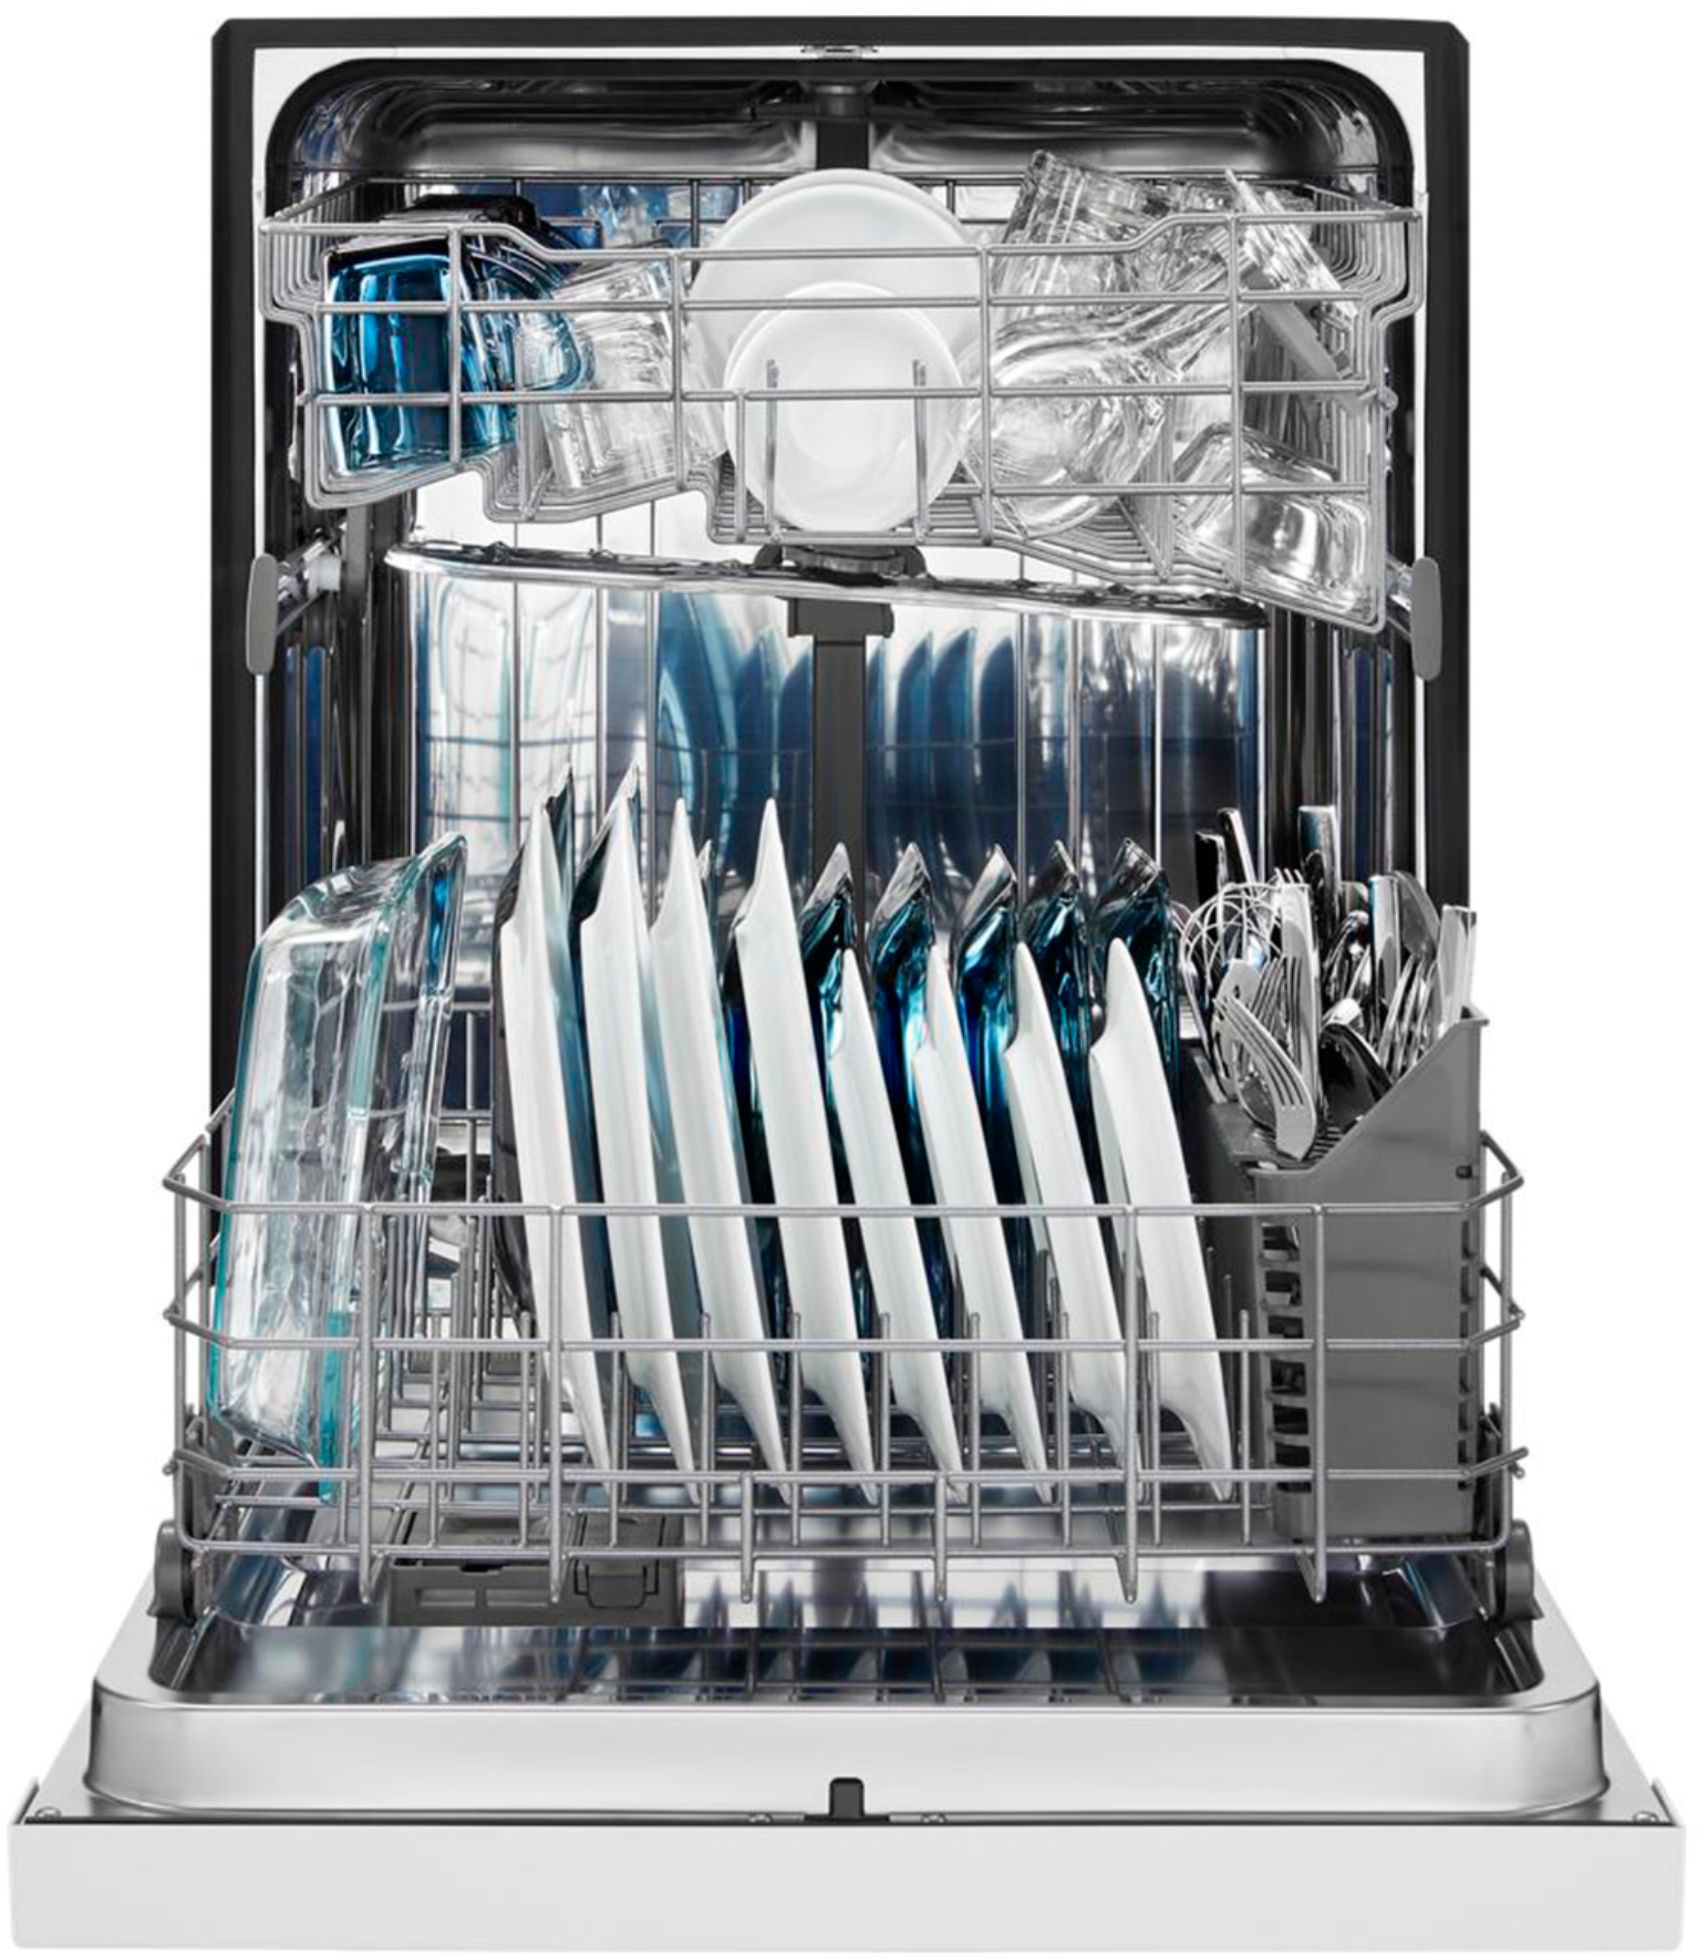 maytag dishwasher mdb4949